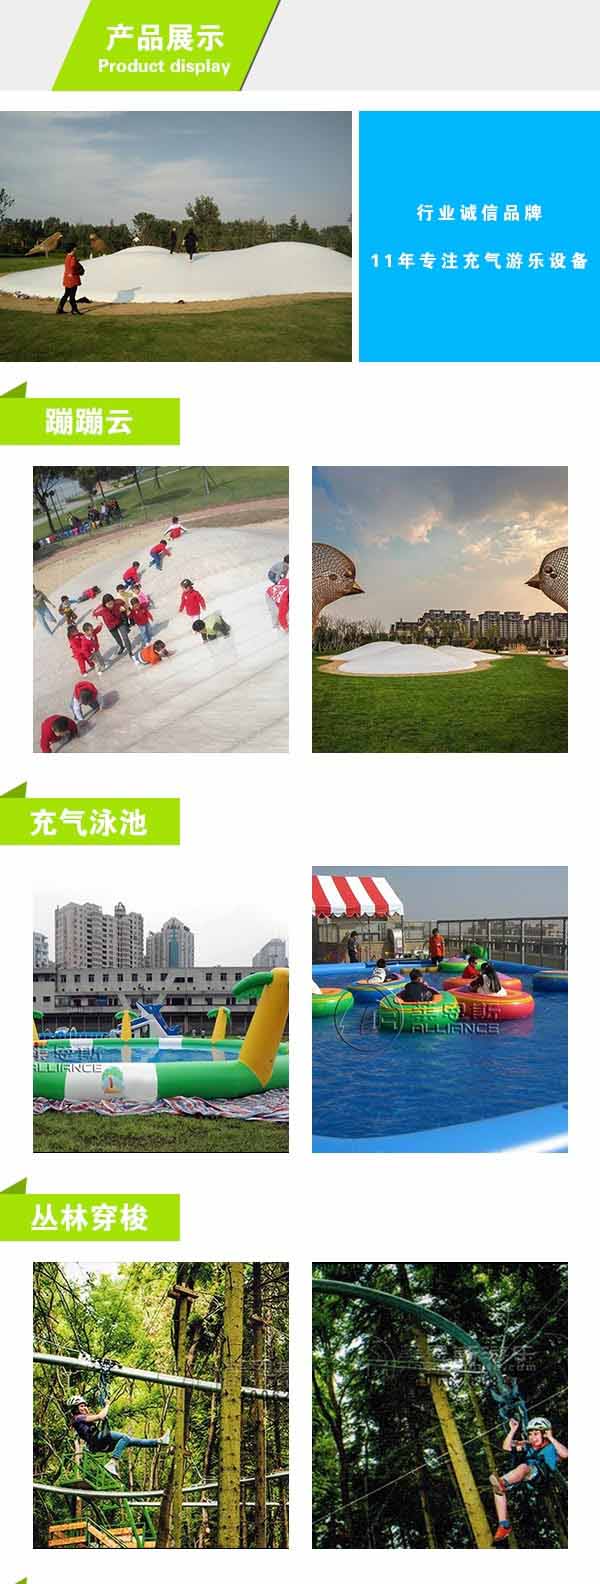 重庆海洋球乐园厂家  莱恩斯游乐  重庆海洋球乐园 3